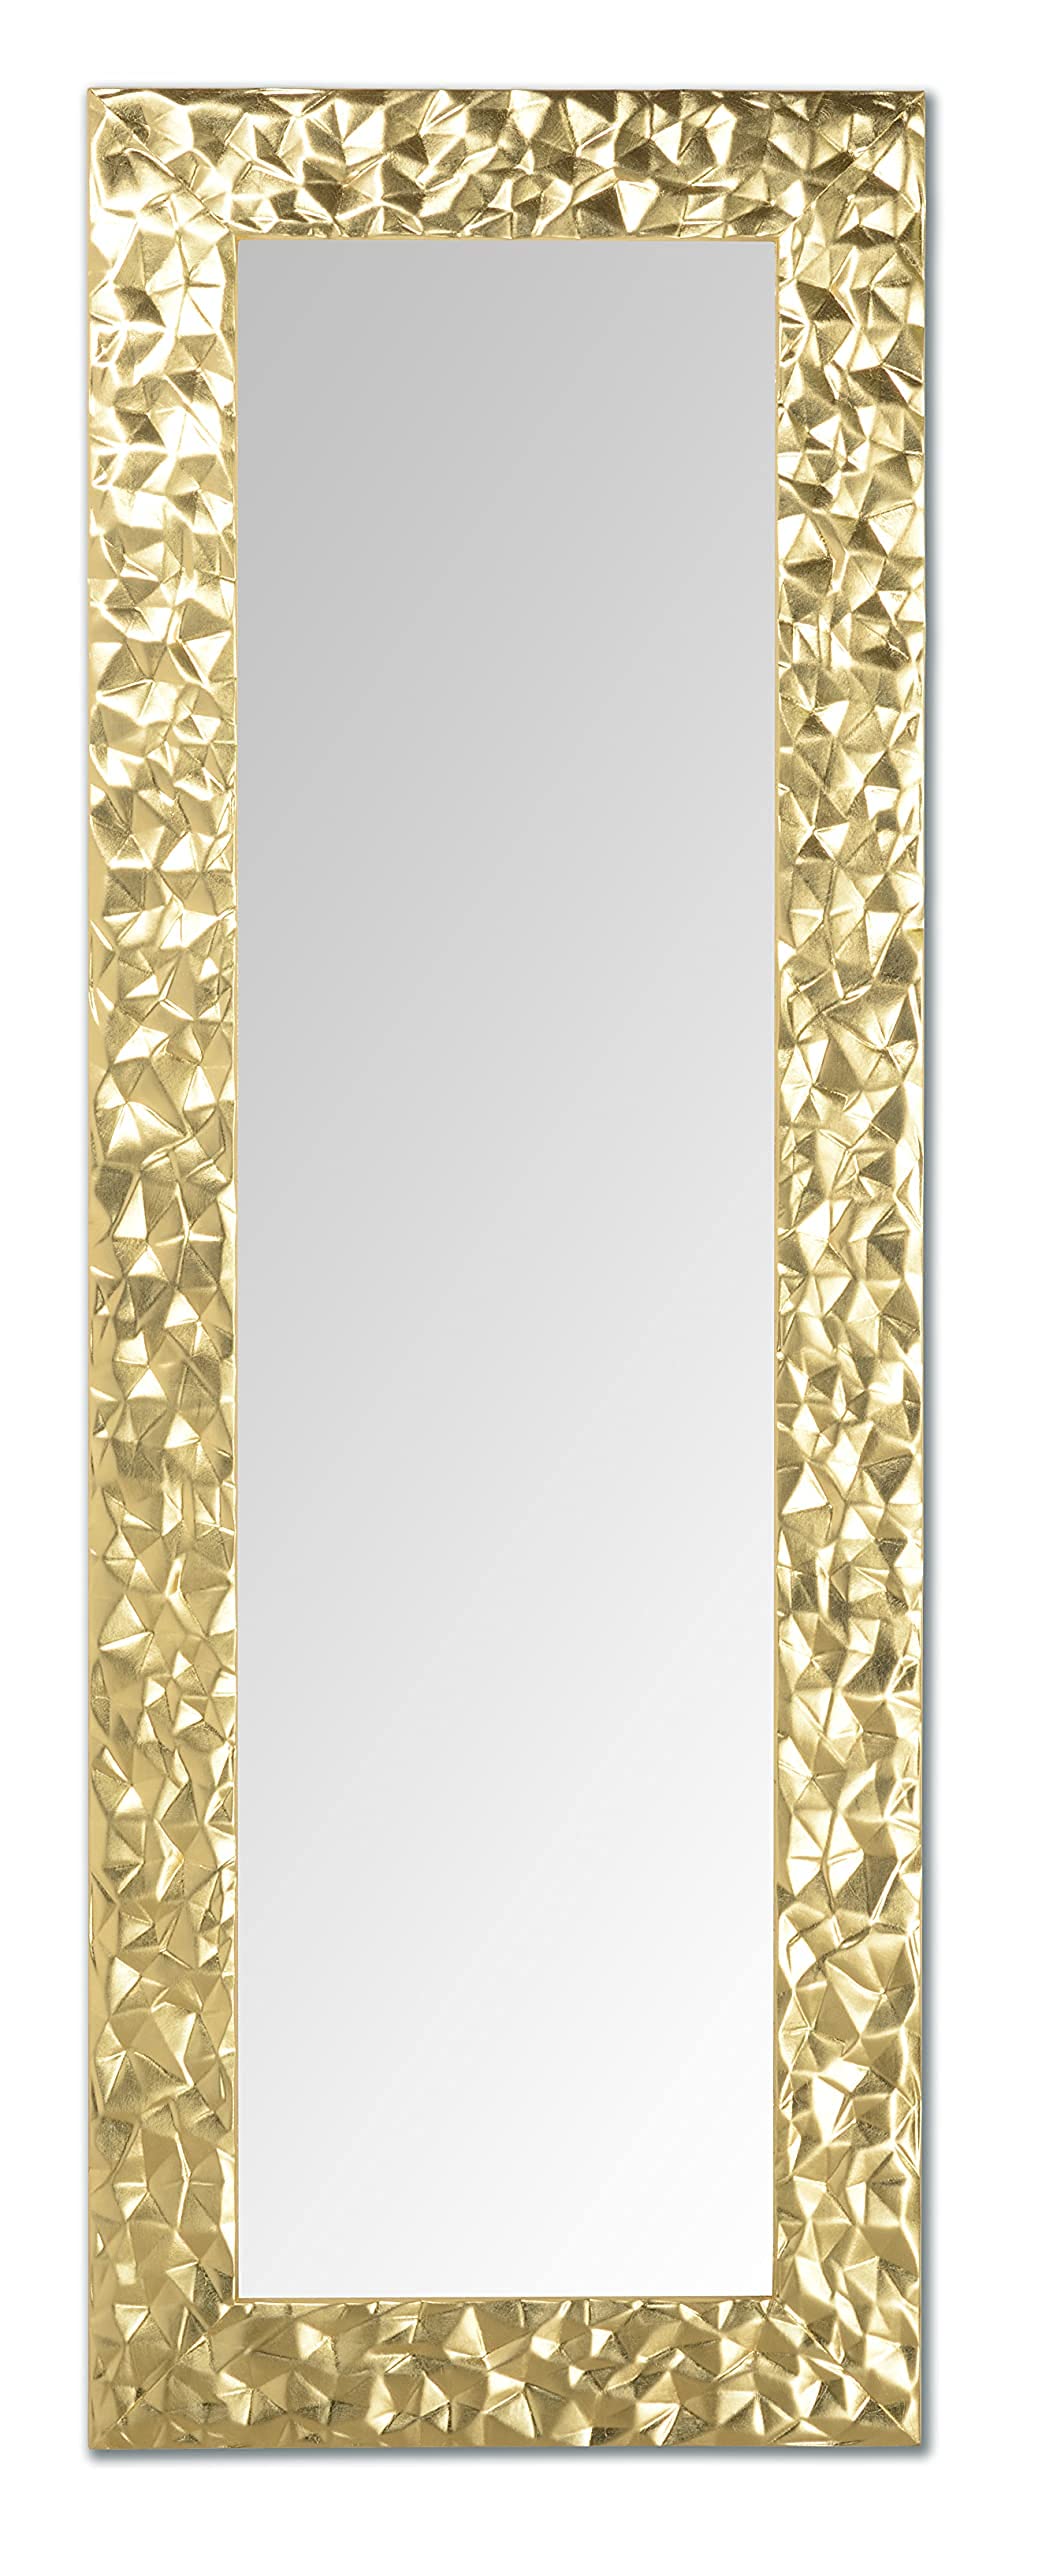 MO.WA Spiegel Wandspiegel Flurspiegel Blattgold 52x147 Lehnspiegel Holzrahmen Gold Ganzkörperspiegel Holzrahmen Bodenspiegel Eingangspiegel